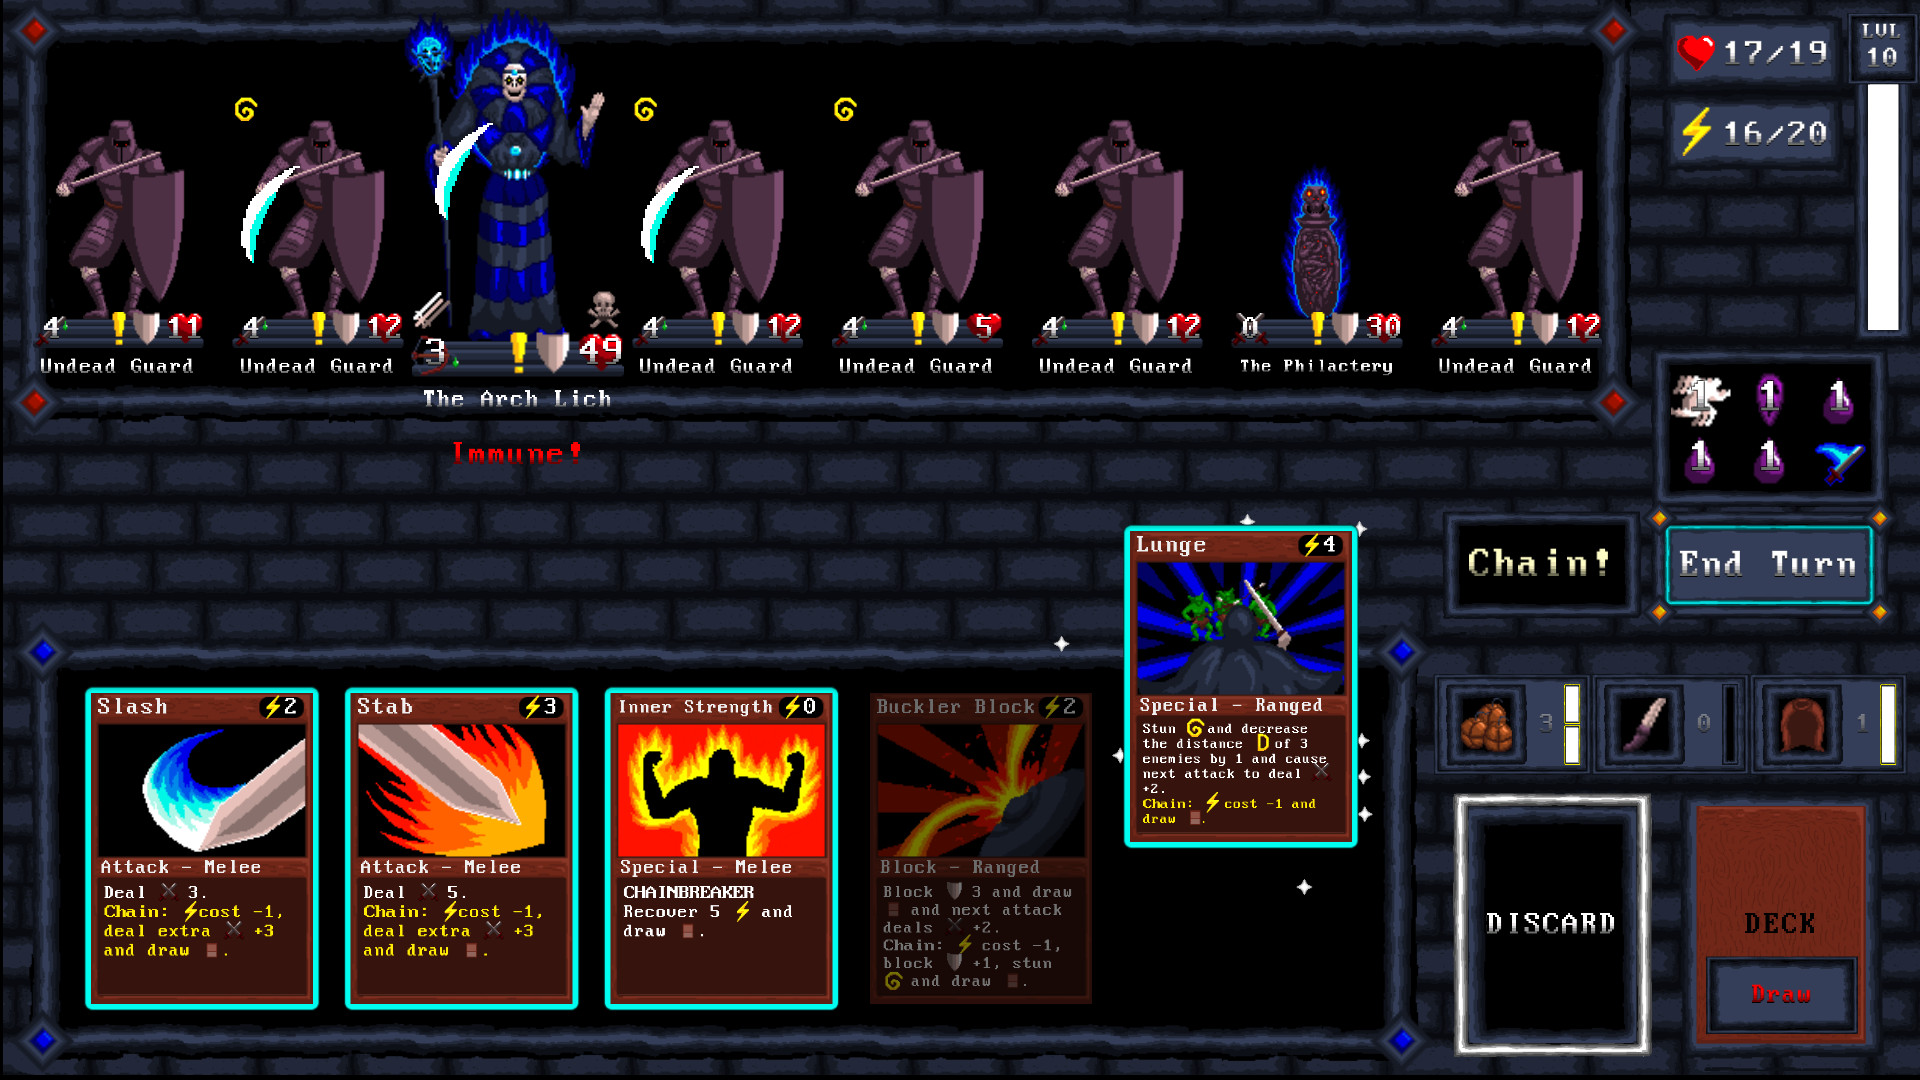 Card Quest screenshot